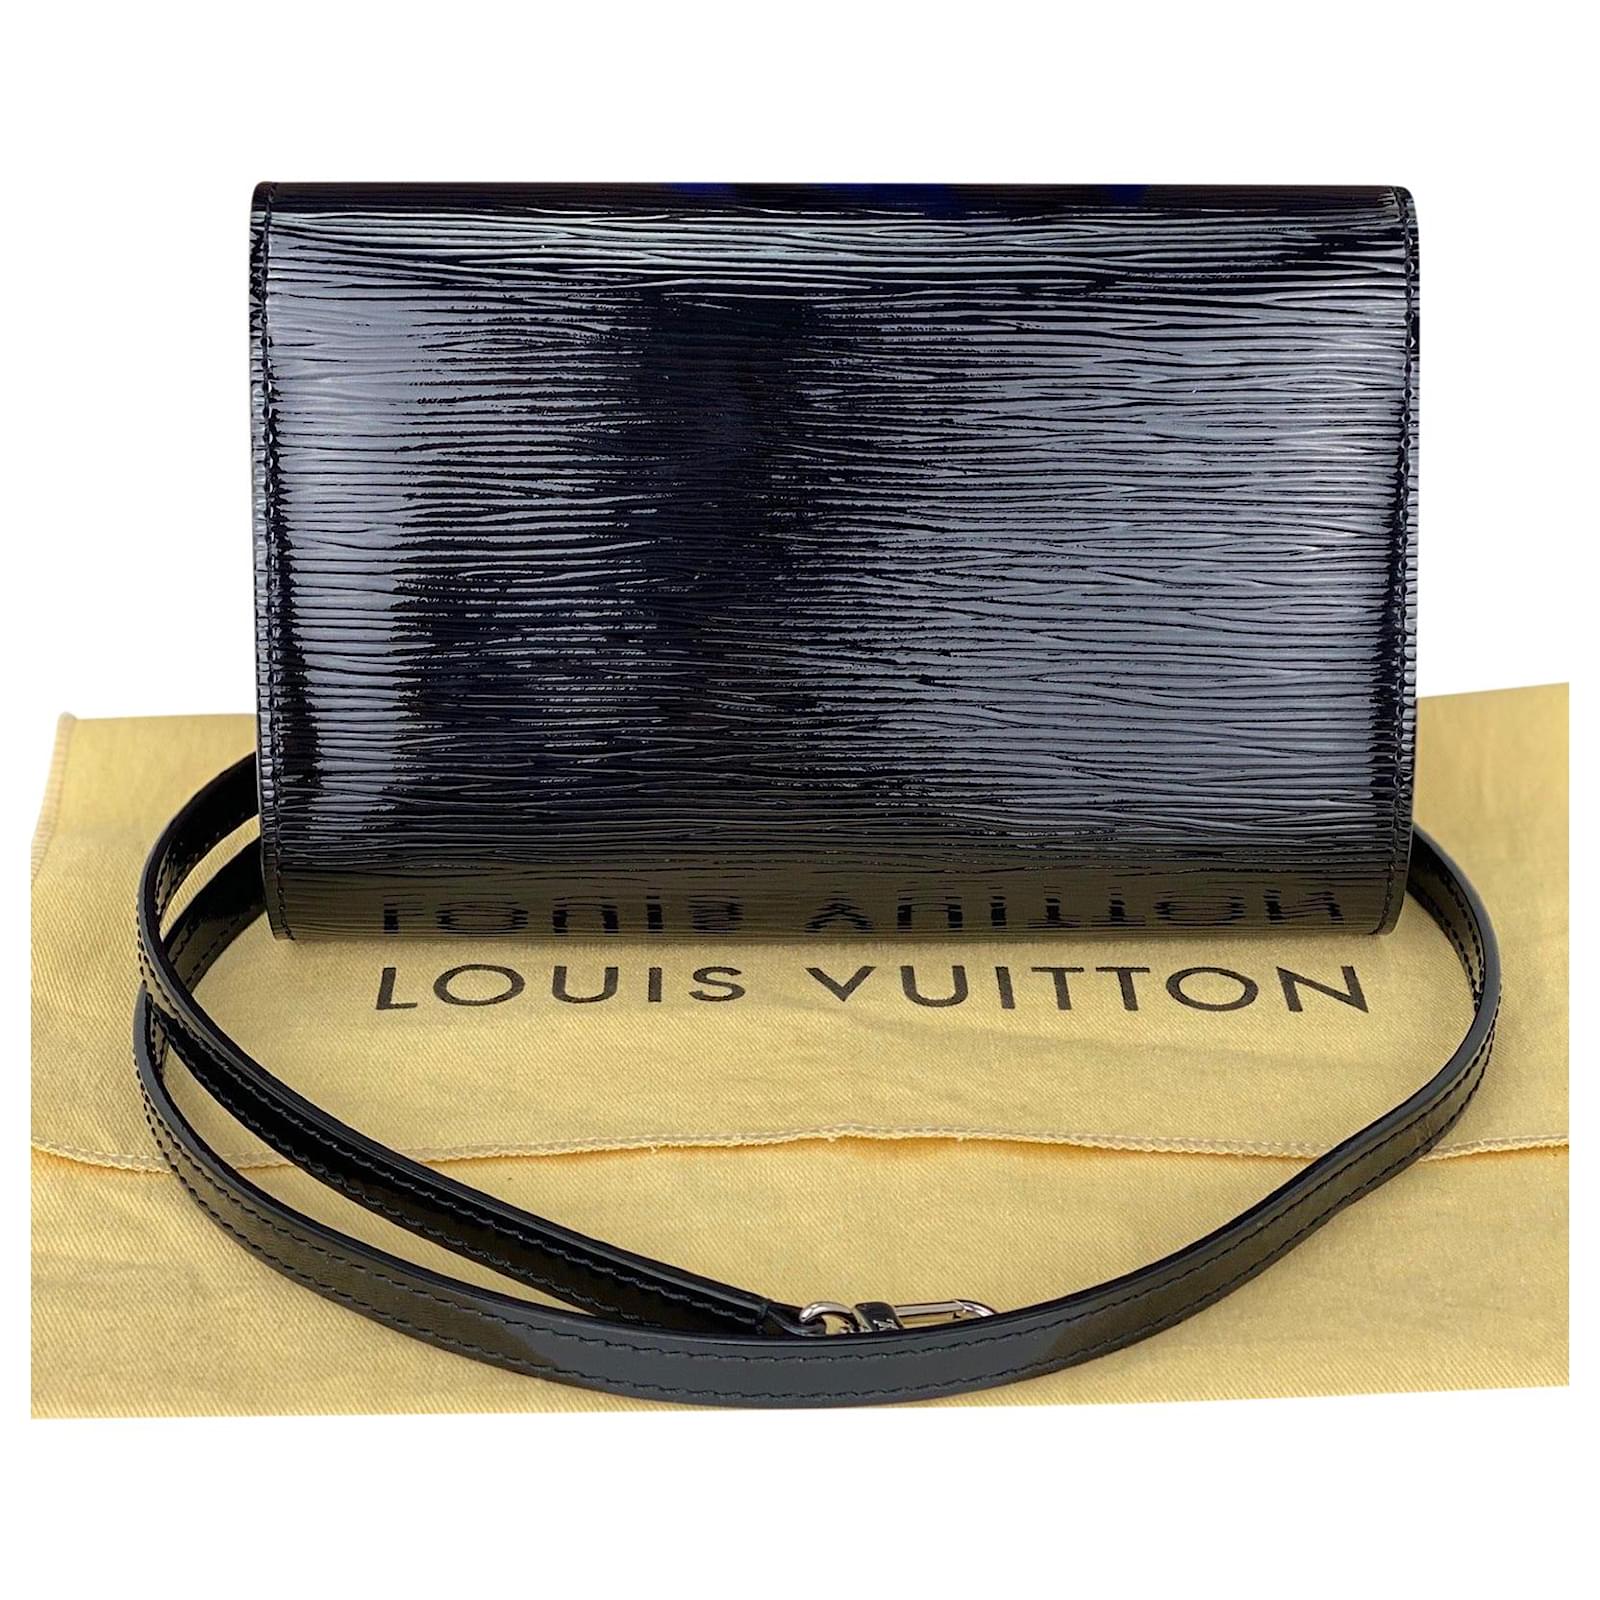 LOUIS VUITTON Electric Epi Louise Strap PM Black | FASHIONPHILE